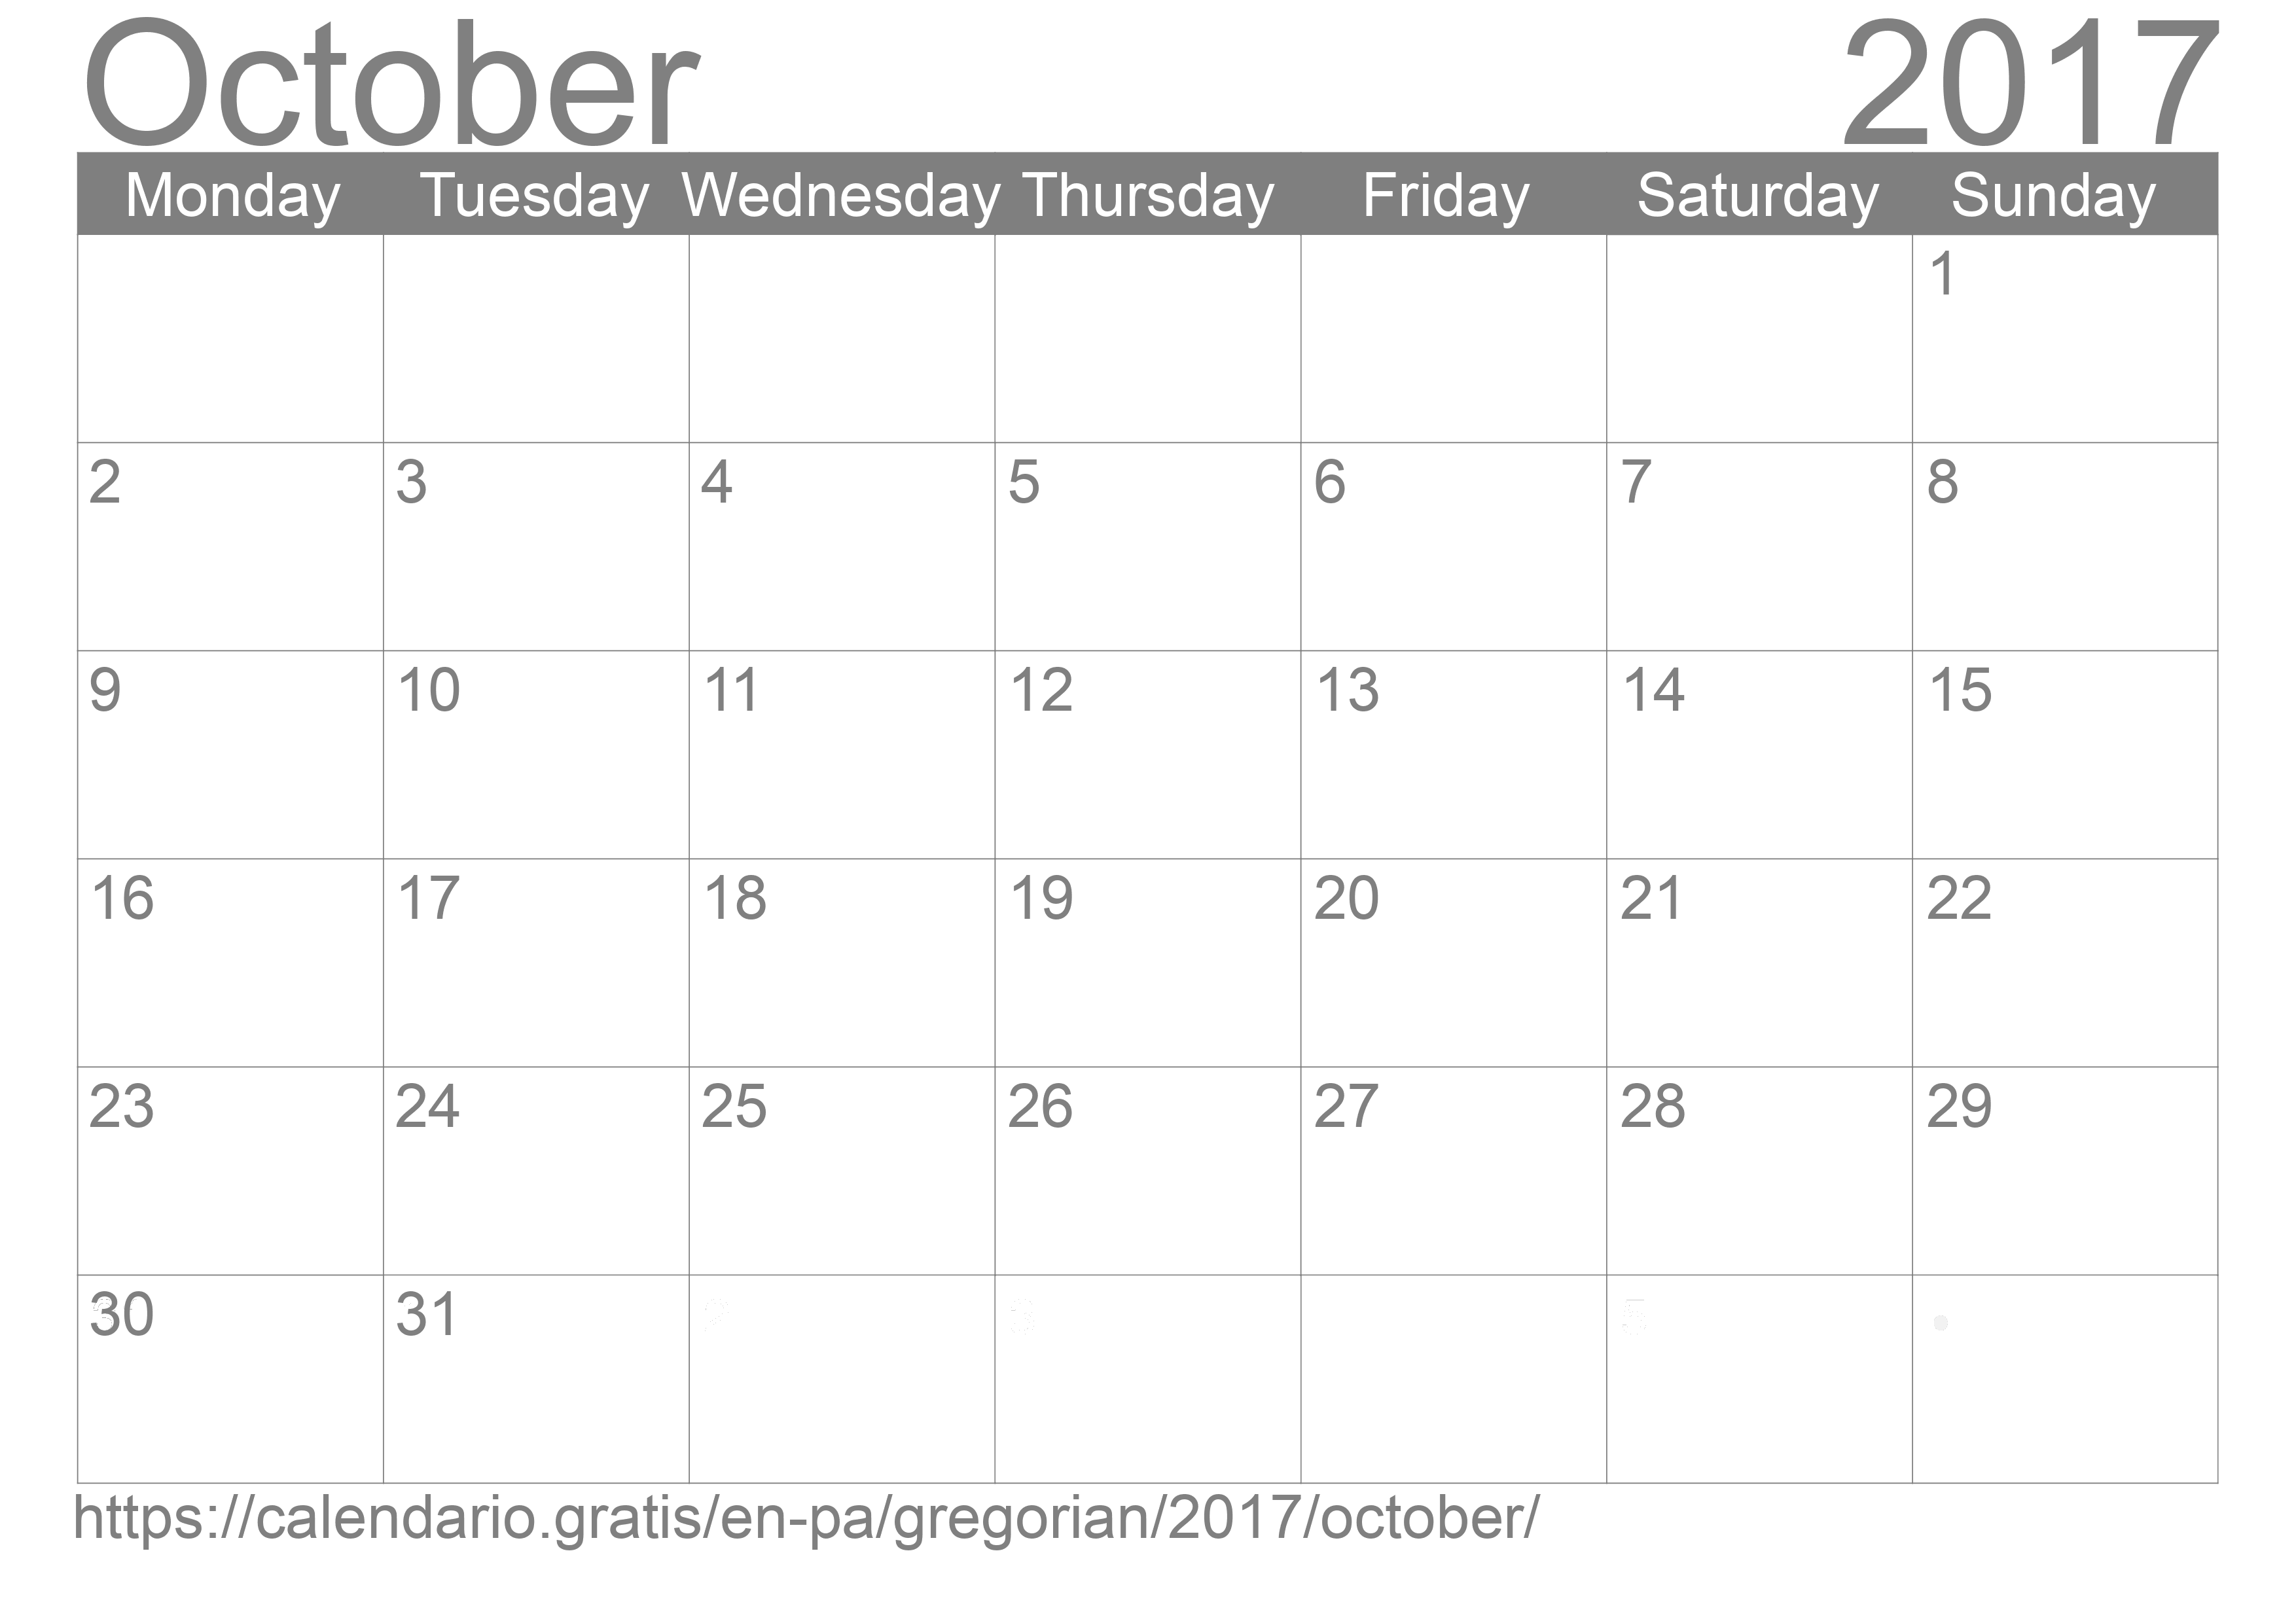 Calendar October 2017 to print